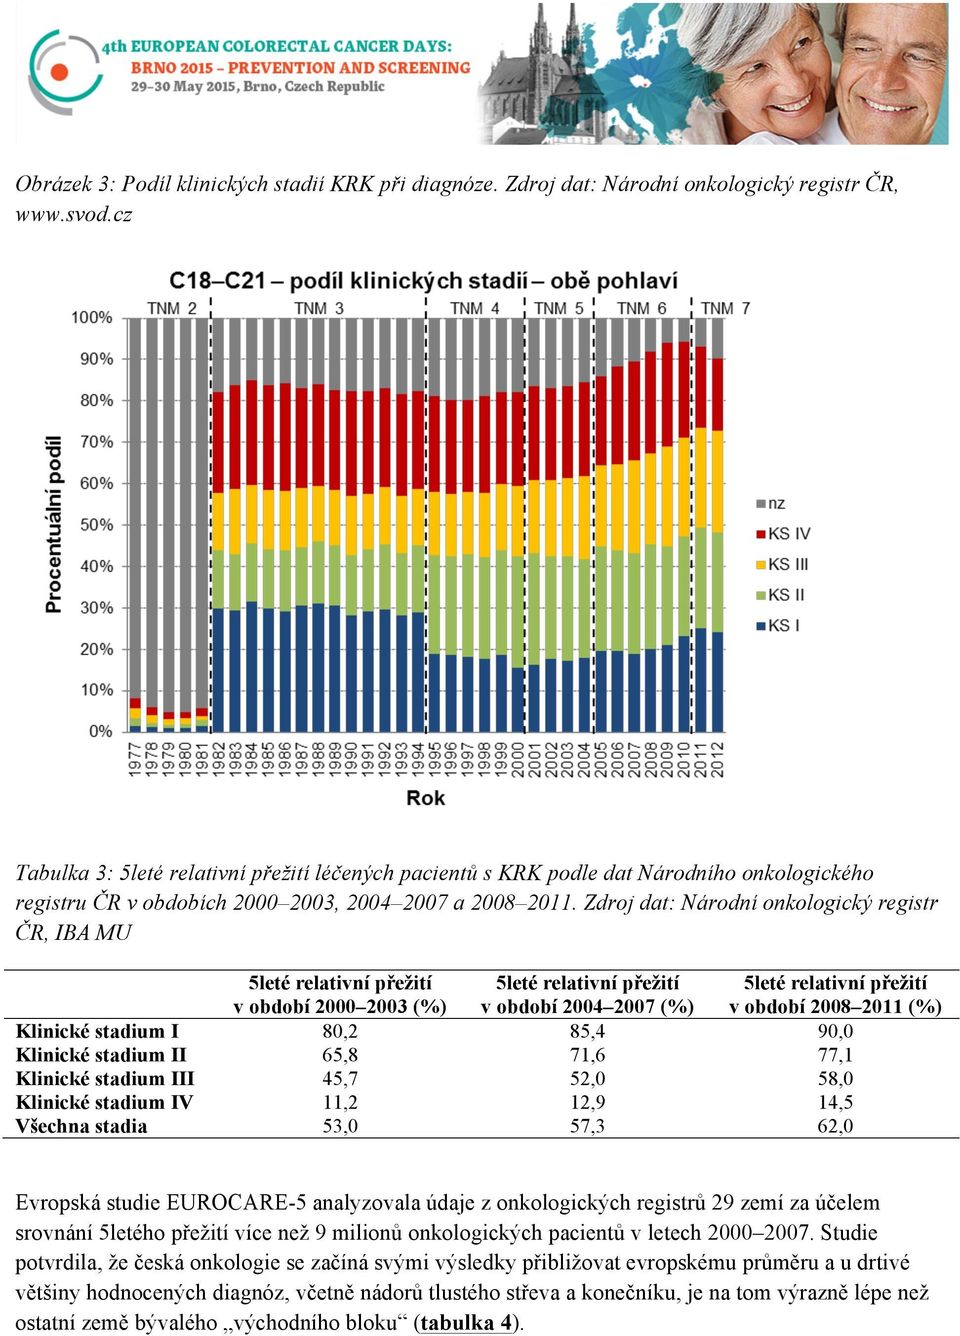 Zdroj dat: Národní onkologický registr ČR, IBA MU 5leté relativní přežití v období 2000 2003 (%) 5leté relativní přežití v období 2004 2007 (%) 5leté relativní přežití v období 2008 2011 (%) Klinické